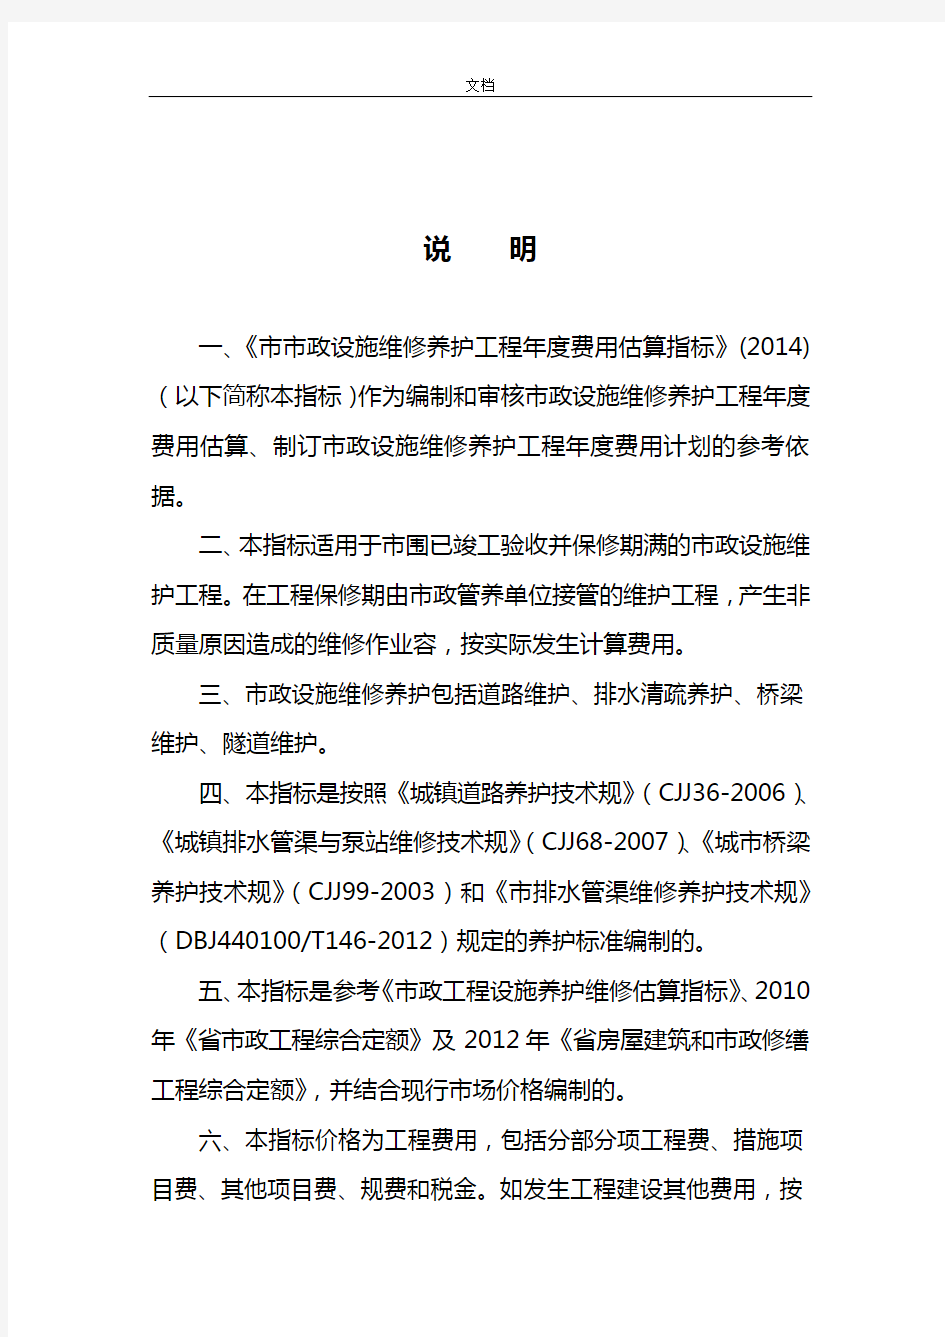 广州市市政设施维修养护工程年度费用估算指标说明书